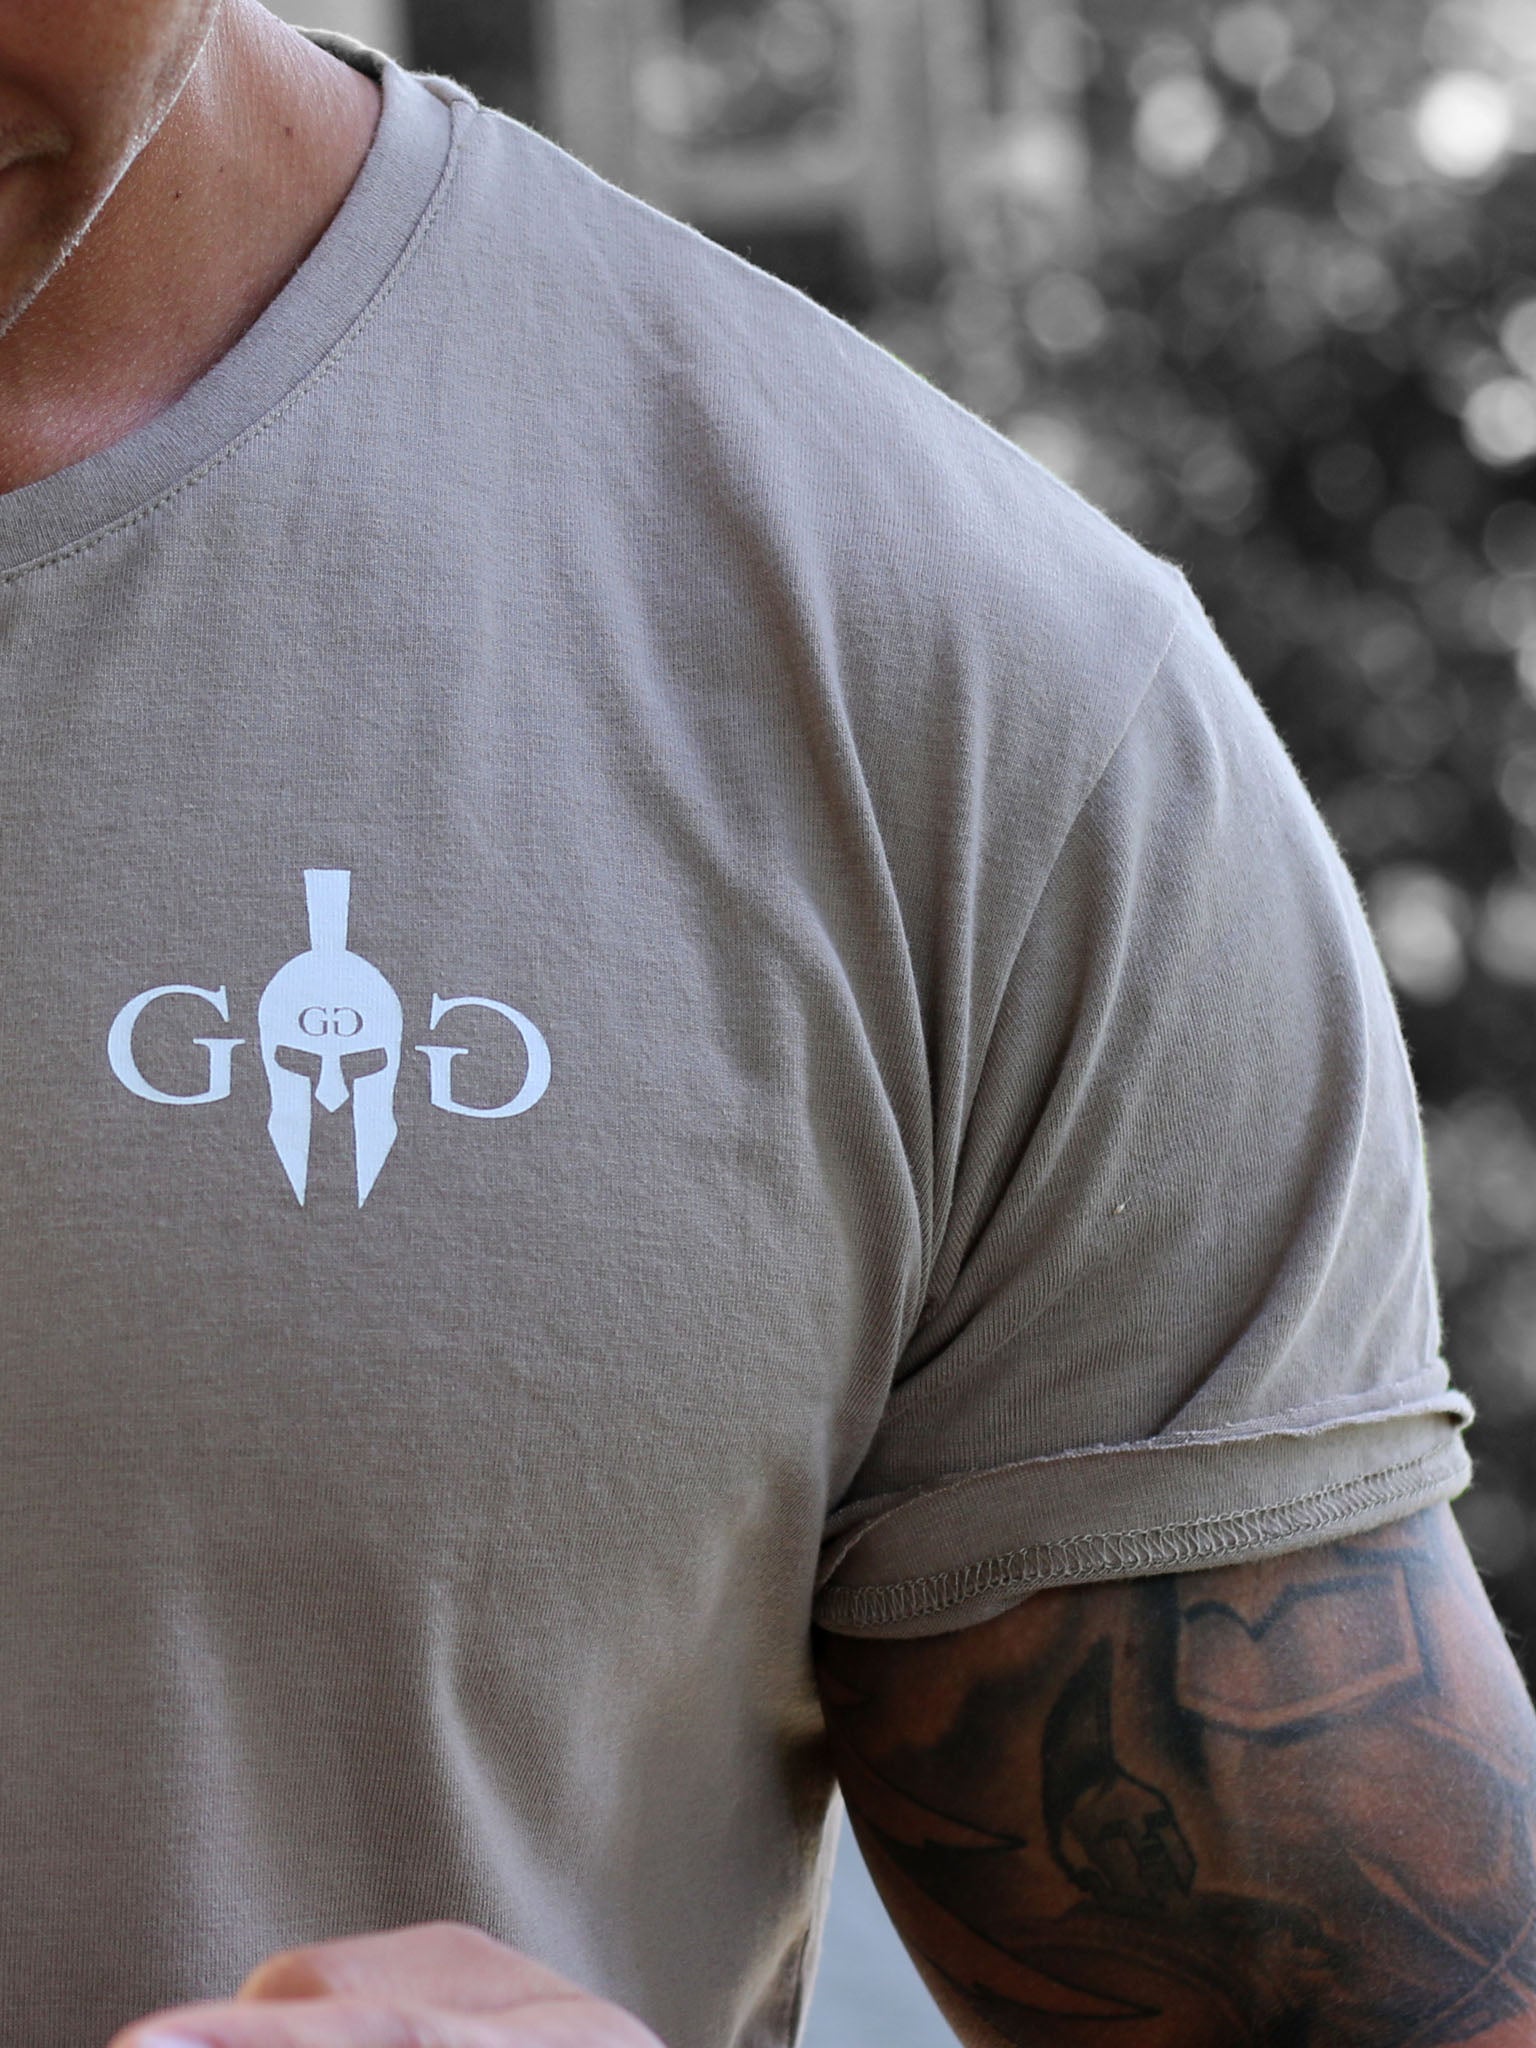 Gym Generation T-Shirt mit Münz-Abdruck von Alexander dem Großen und Unendlichkeitszeichen, symbolisiert Stärke und Ehrgeiz.